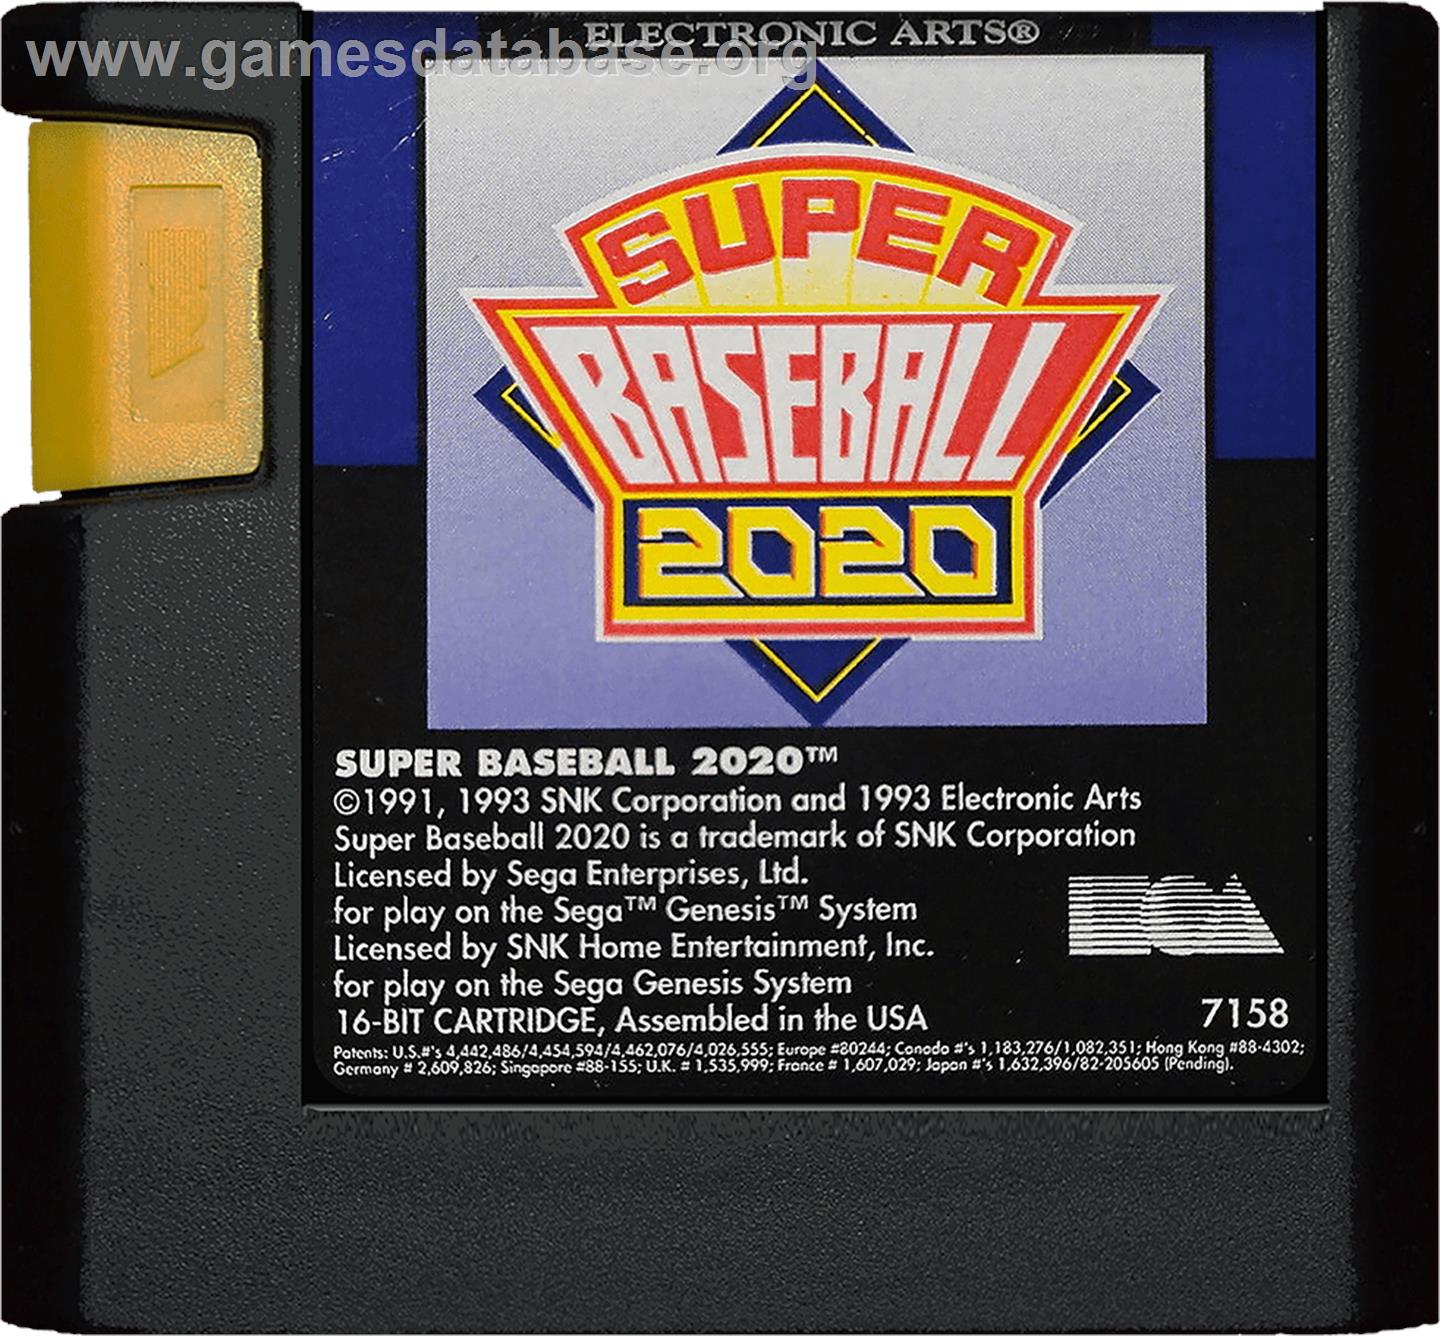 Super Baseball 2020 - Sega Genesis - Artwork - Cartridge